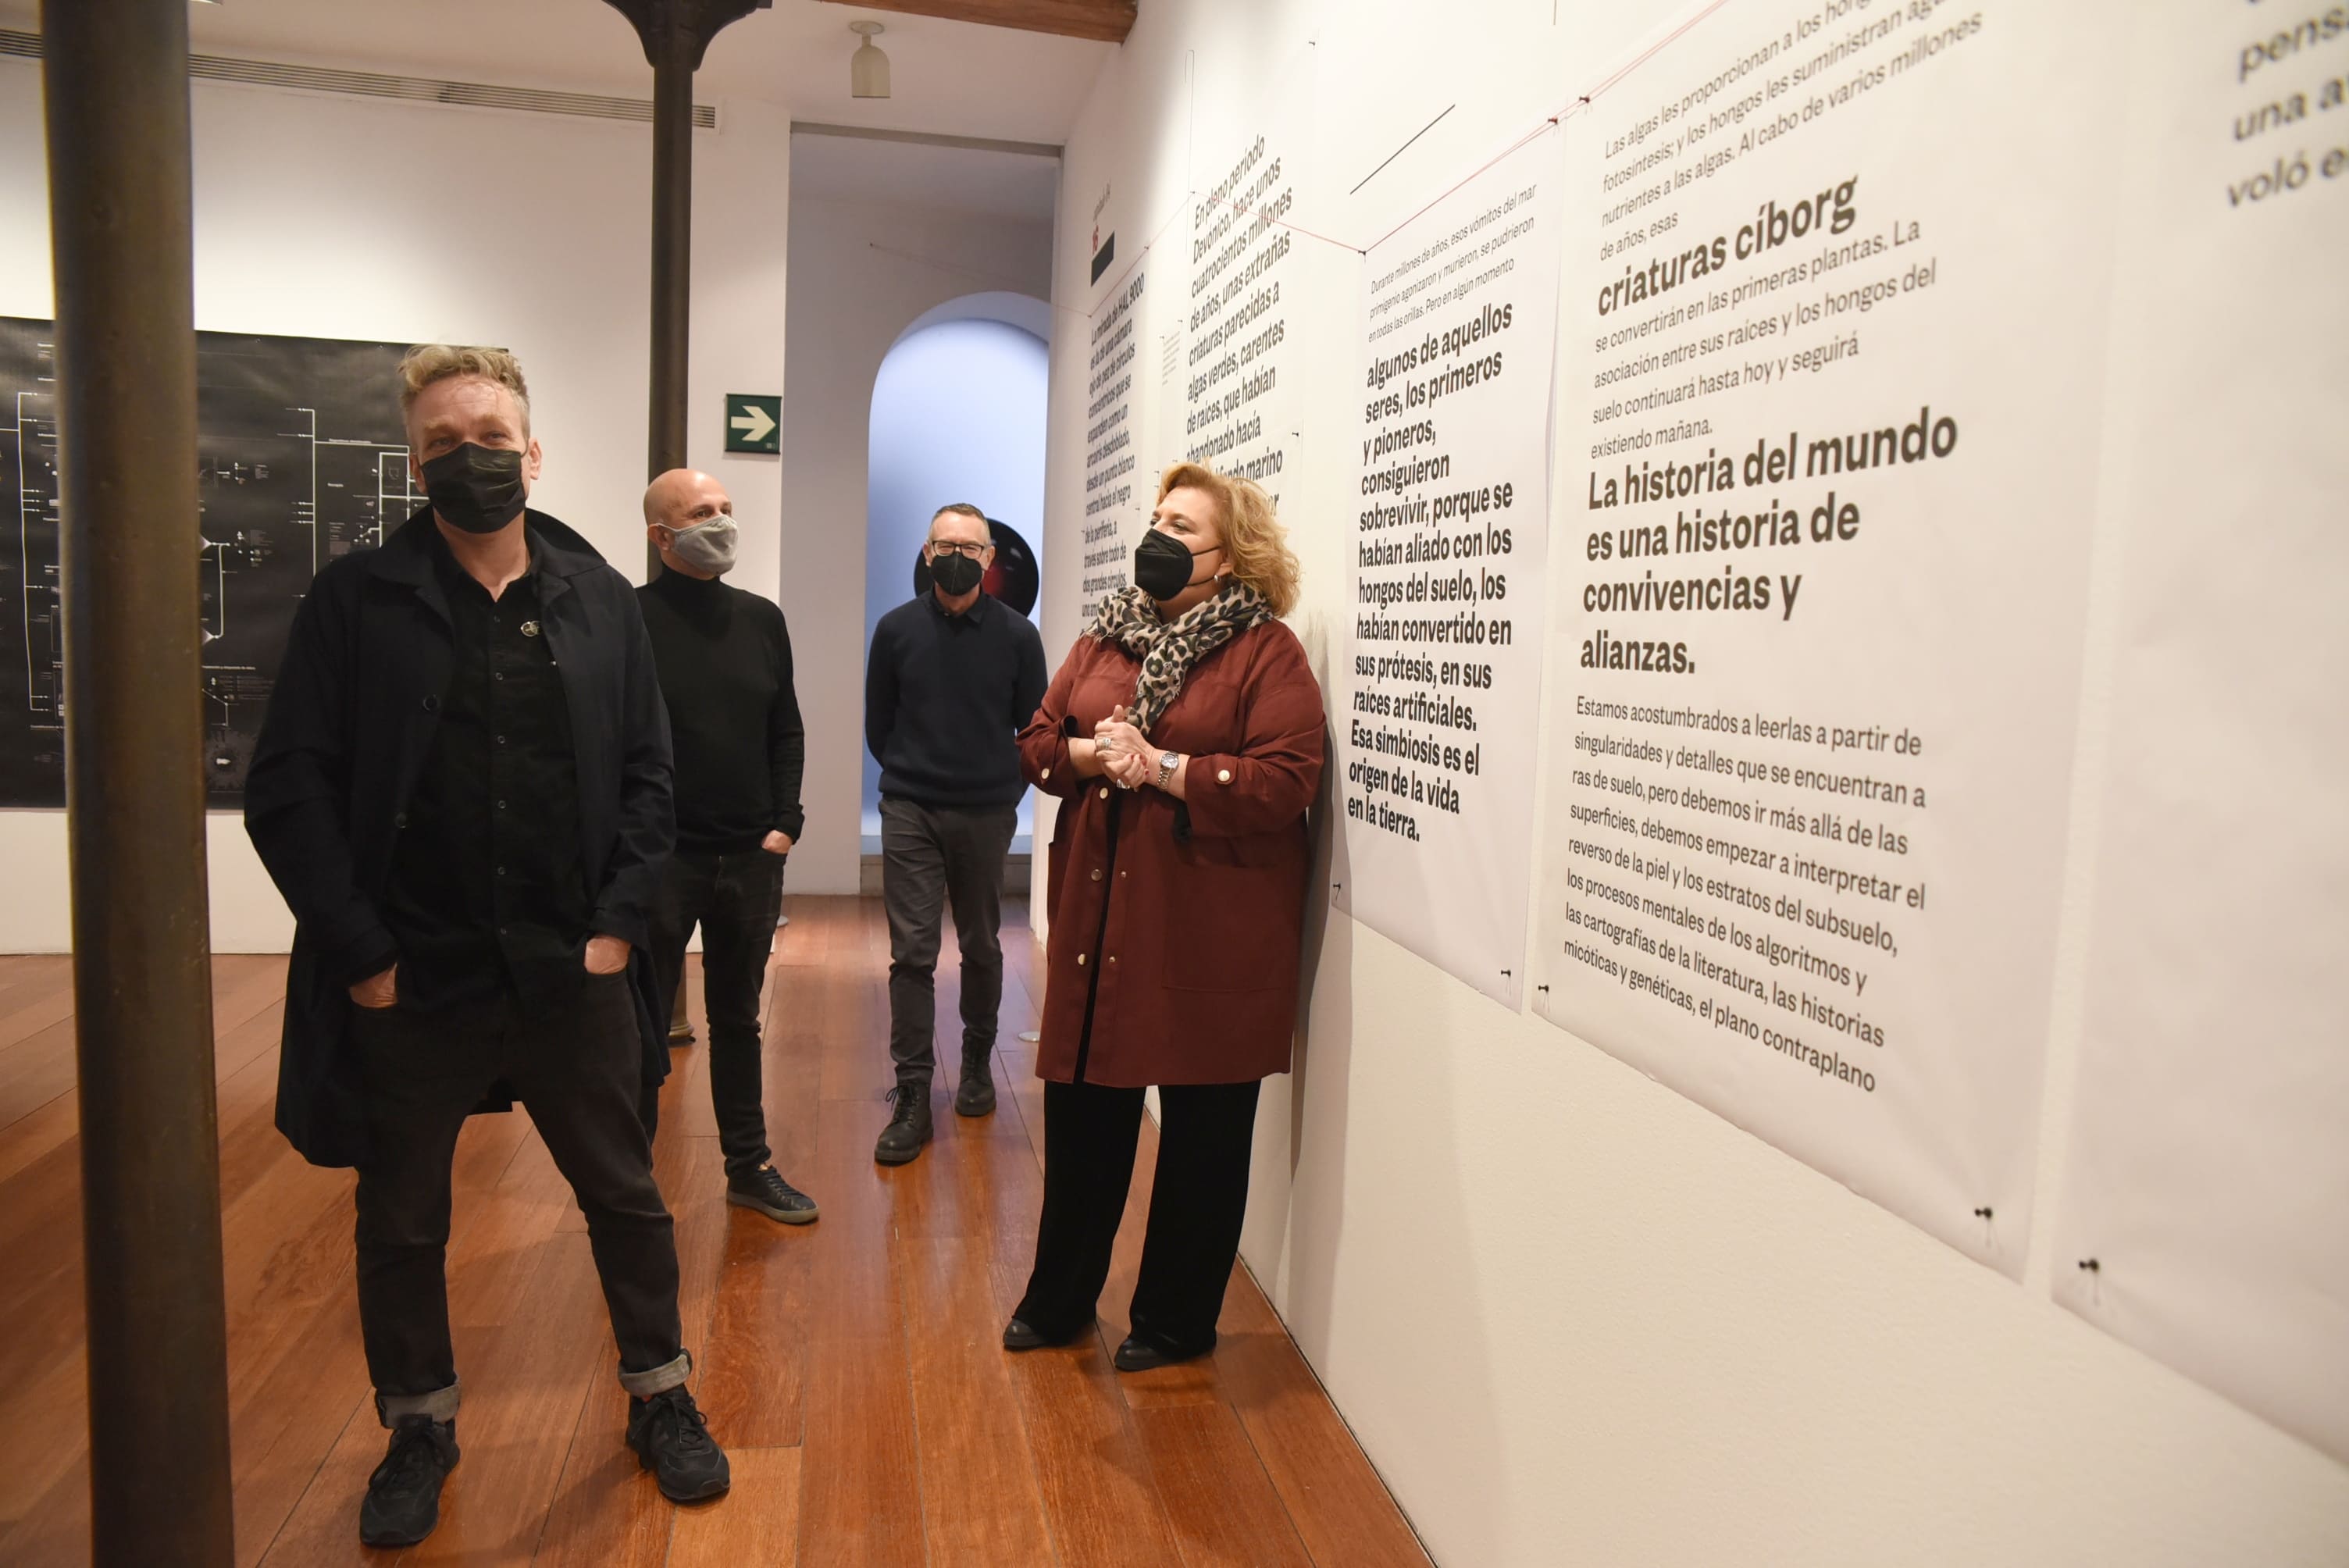 Este domingo se clausura la exposición “Todos los museos son de ciencia ficción” en el Centro Guerrero de Diputación